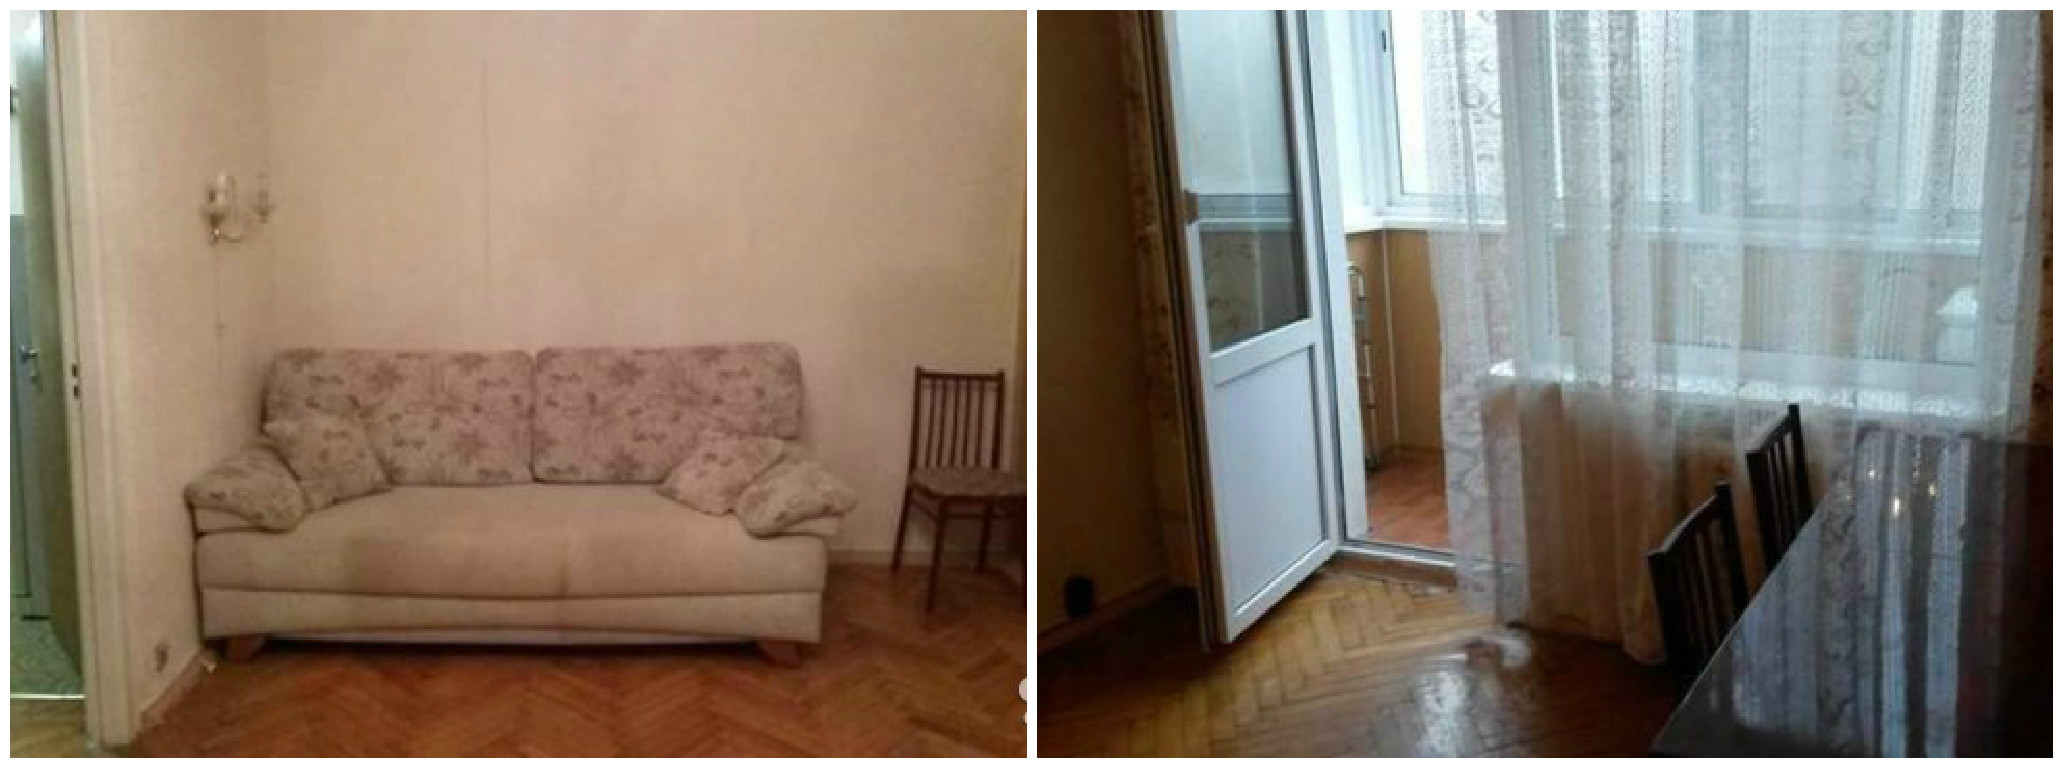 Квартира в Москве в 300 м. от м. Чертановская за 7 200 000 руб. заграница, квартира, курорты, москва, недвижимость, сравнение